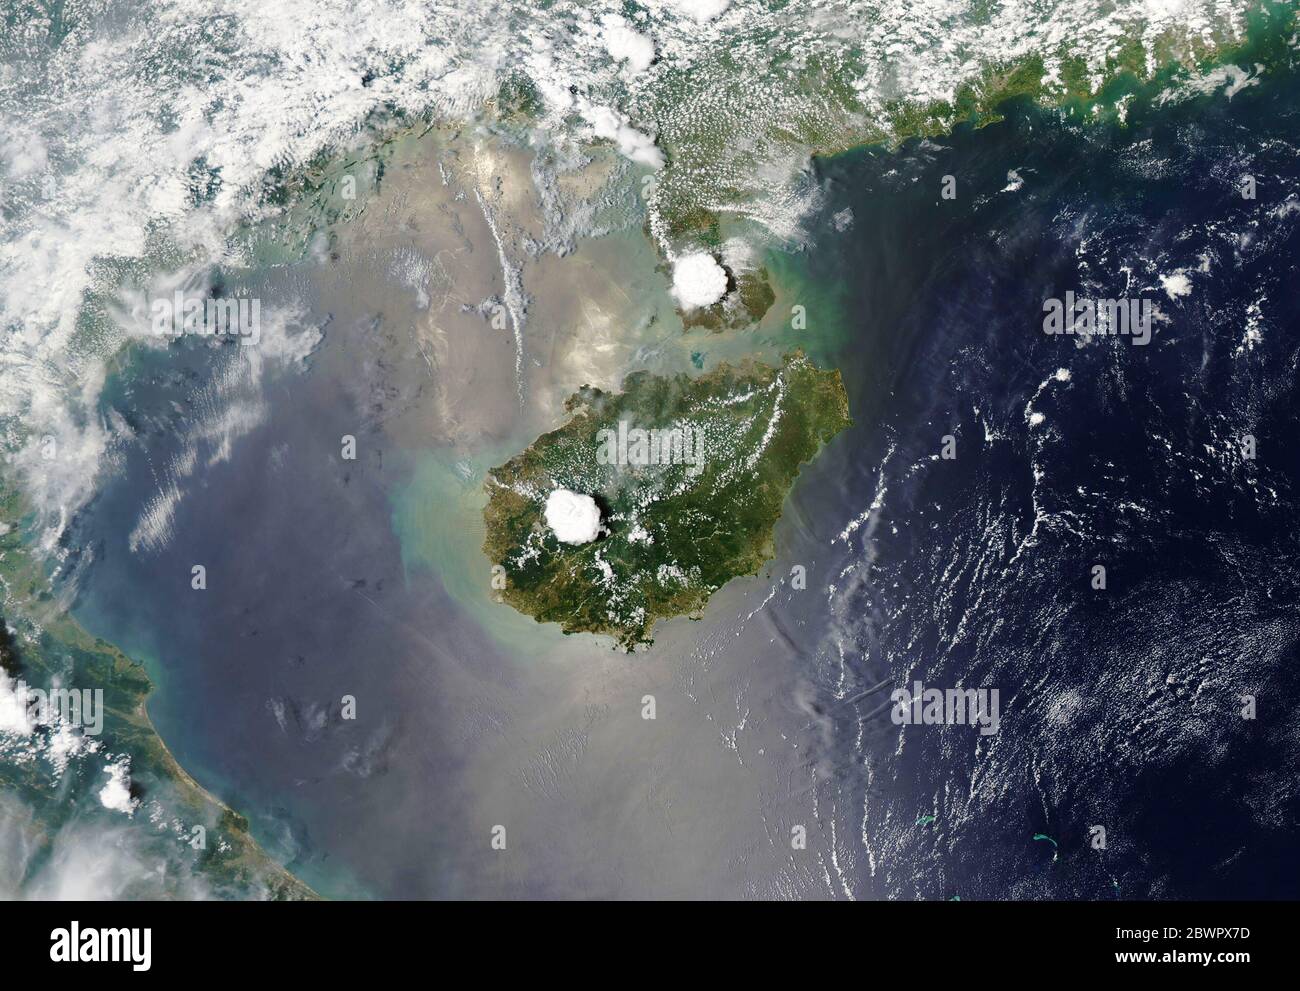 ÎLE HAINAN, CHINE - 11 mai 2020 - passez du temps sur l'île Hainan en Chine, et il est fort probable que vous assisterez à une tempête de foudre. Hainan et nei Banque D'Images